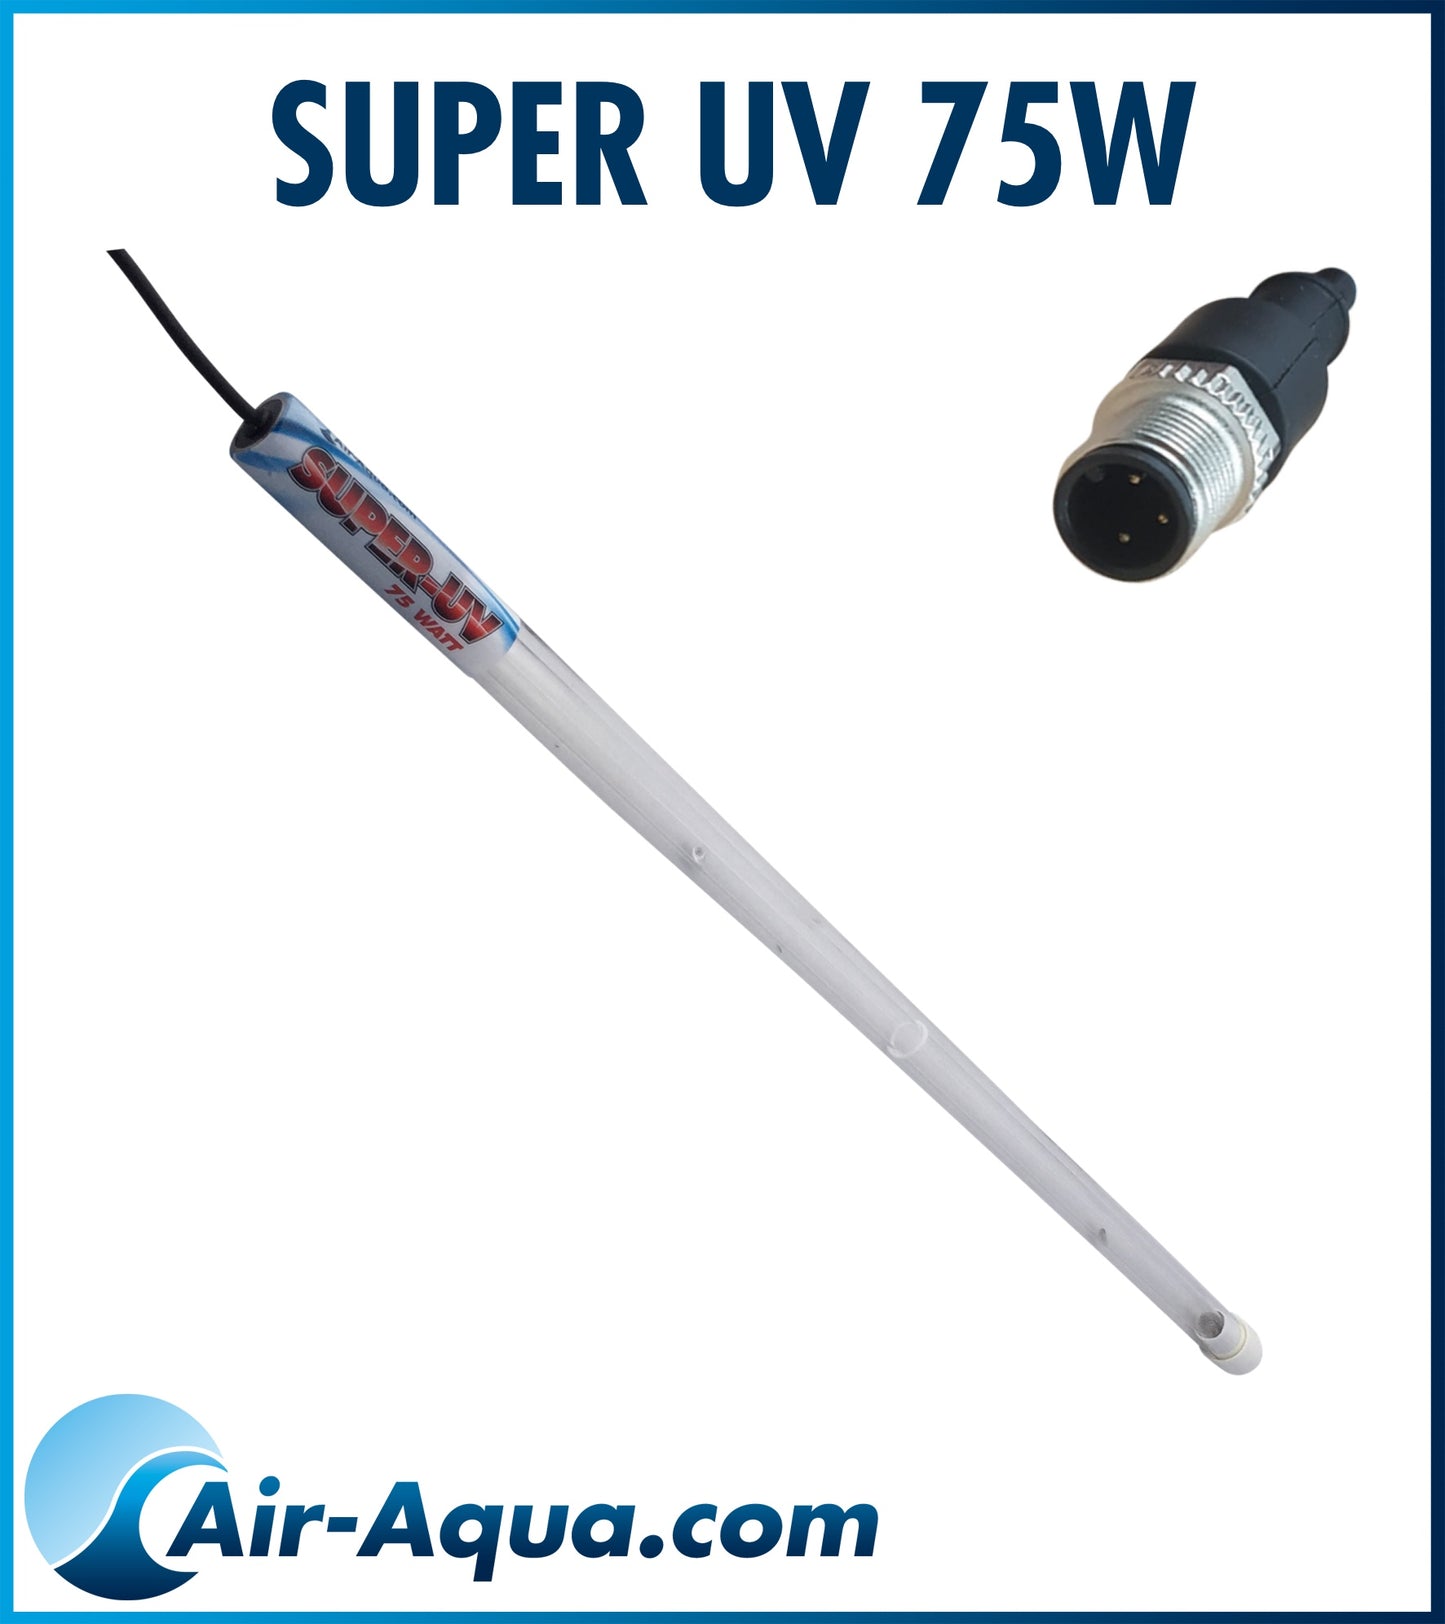 Super UV 75W Replacement lamp/quartz